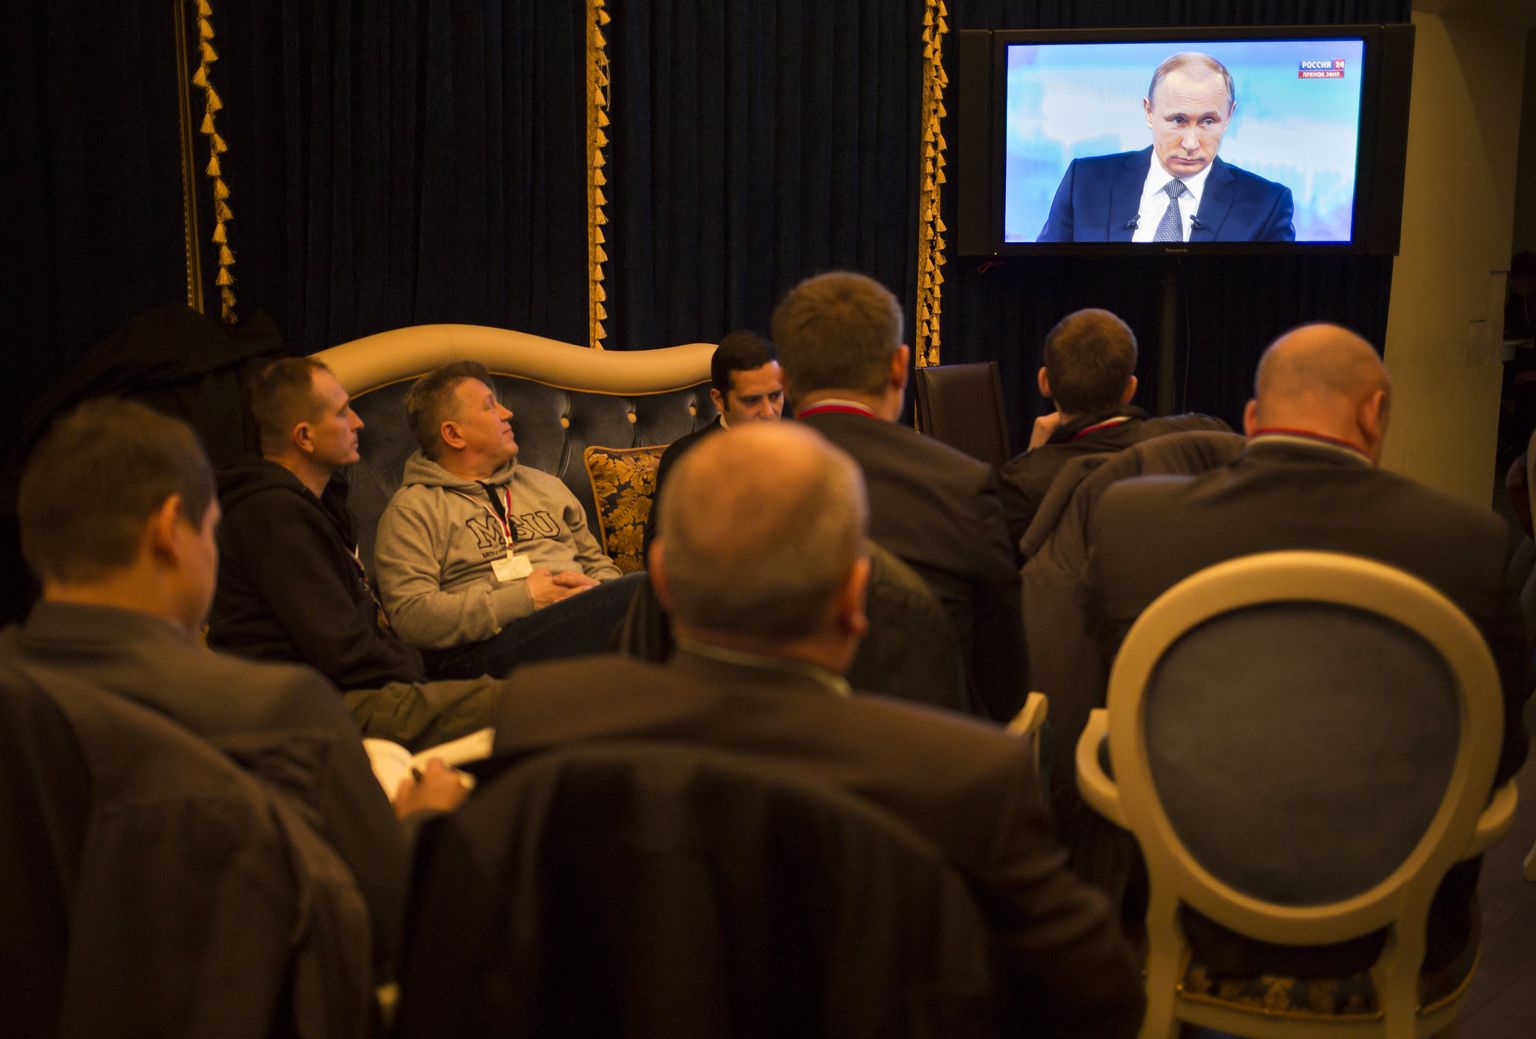 Inimesed vaatamas Venemaa presidendi Vladimir Putini kõnet televiisorist